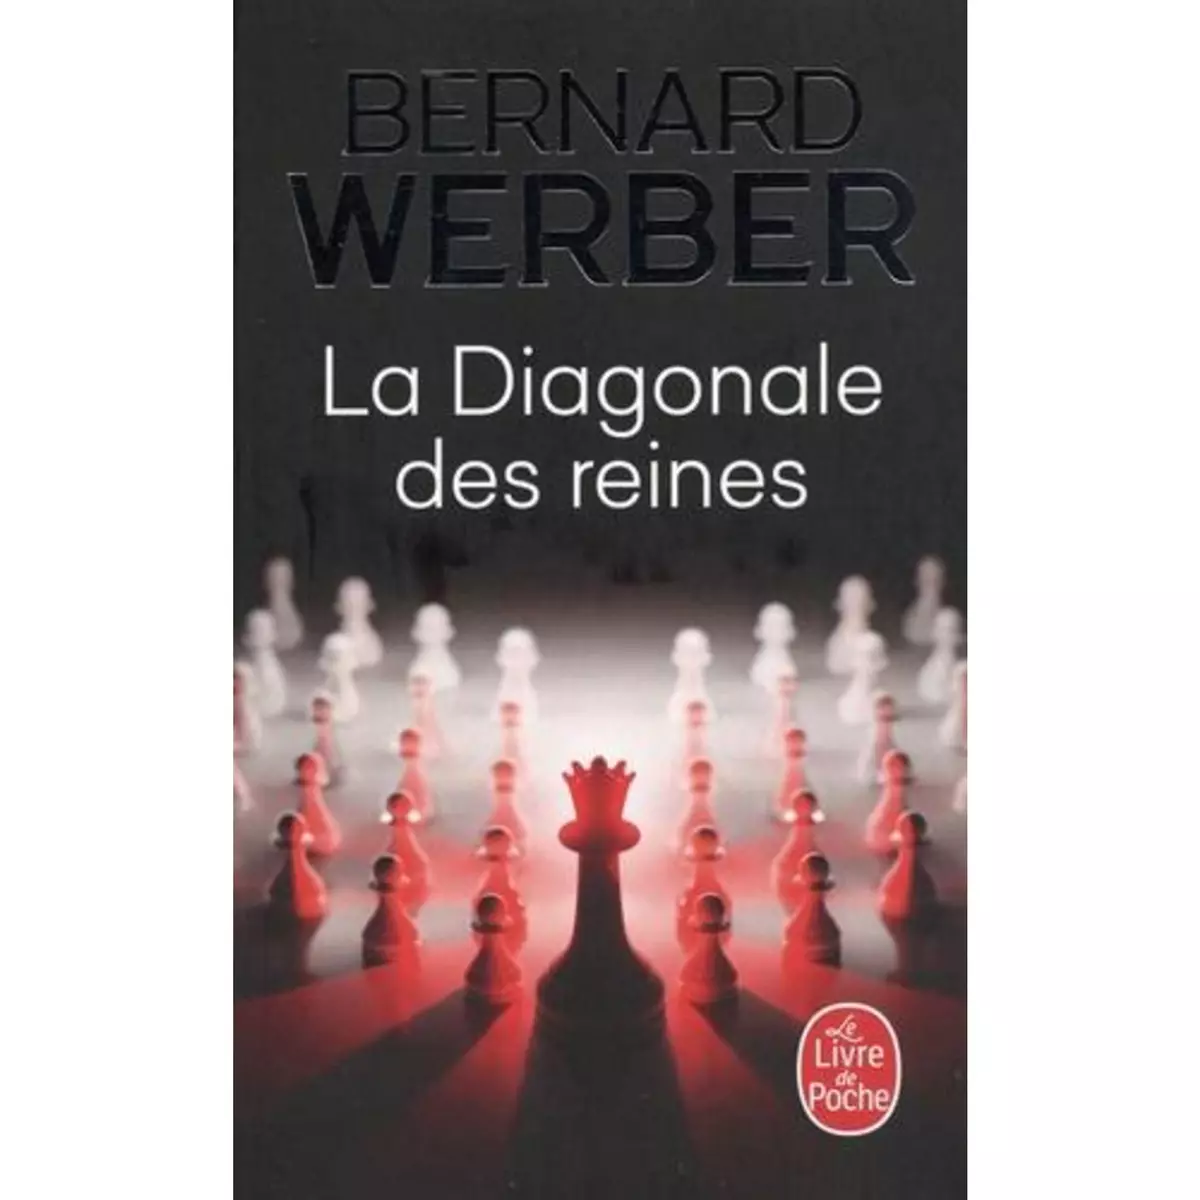  LA DIAGONALE DES REINES, Werber Bernard